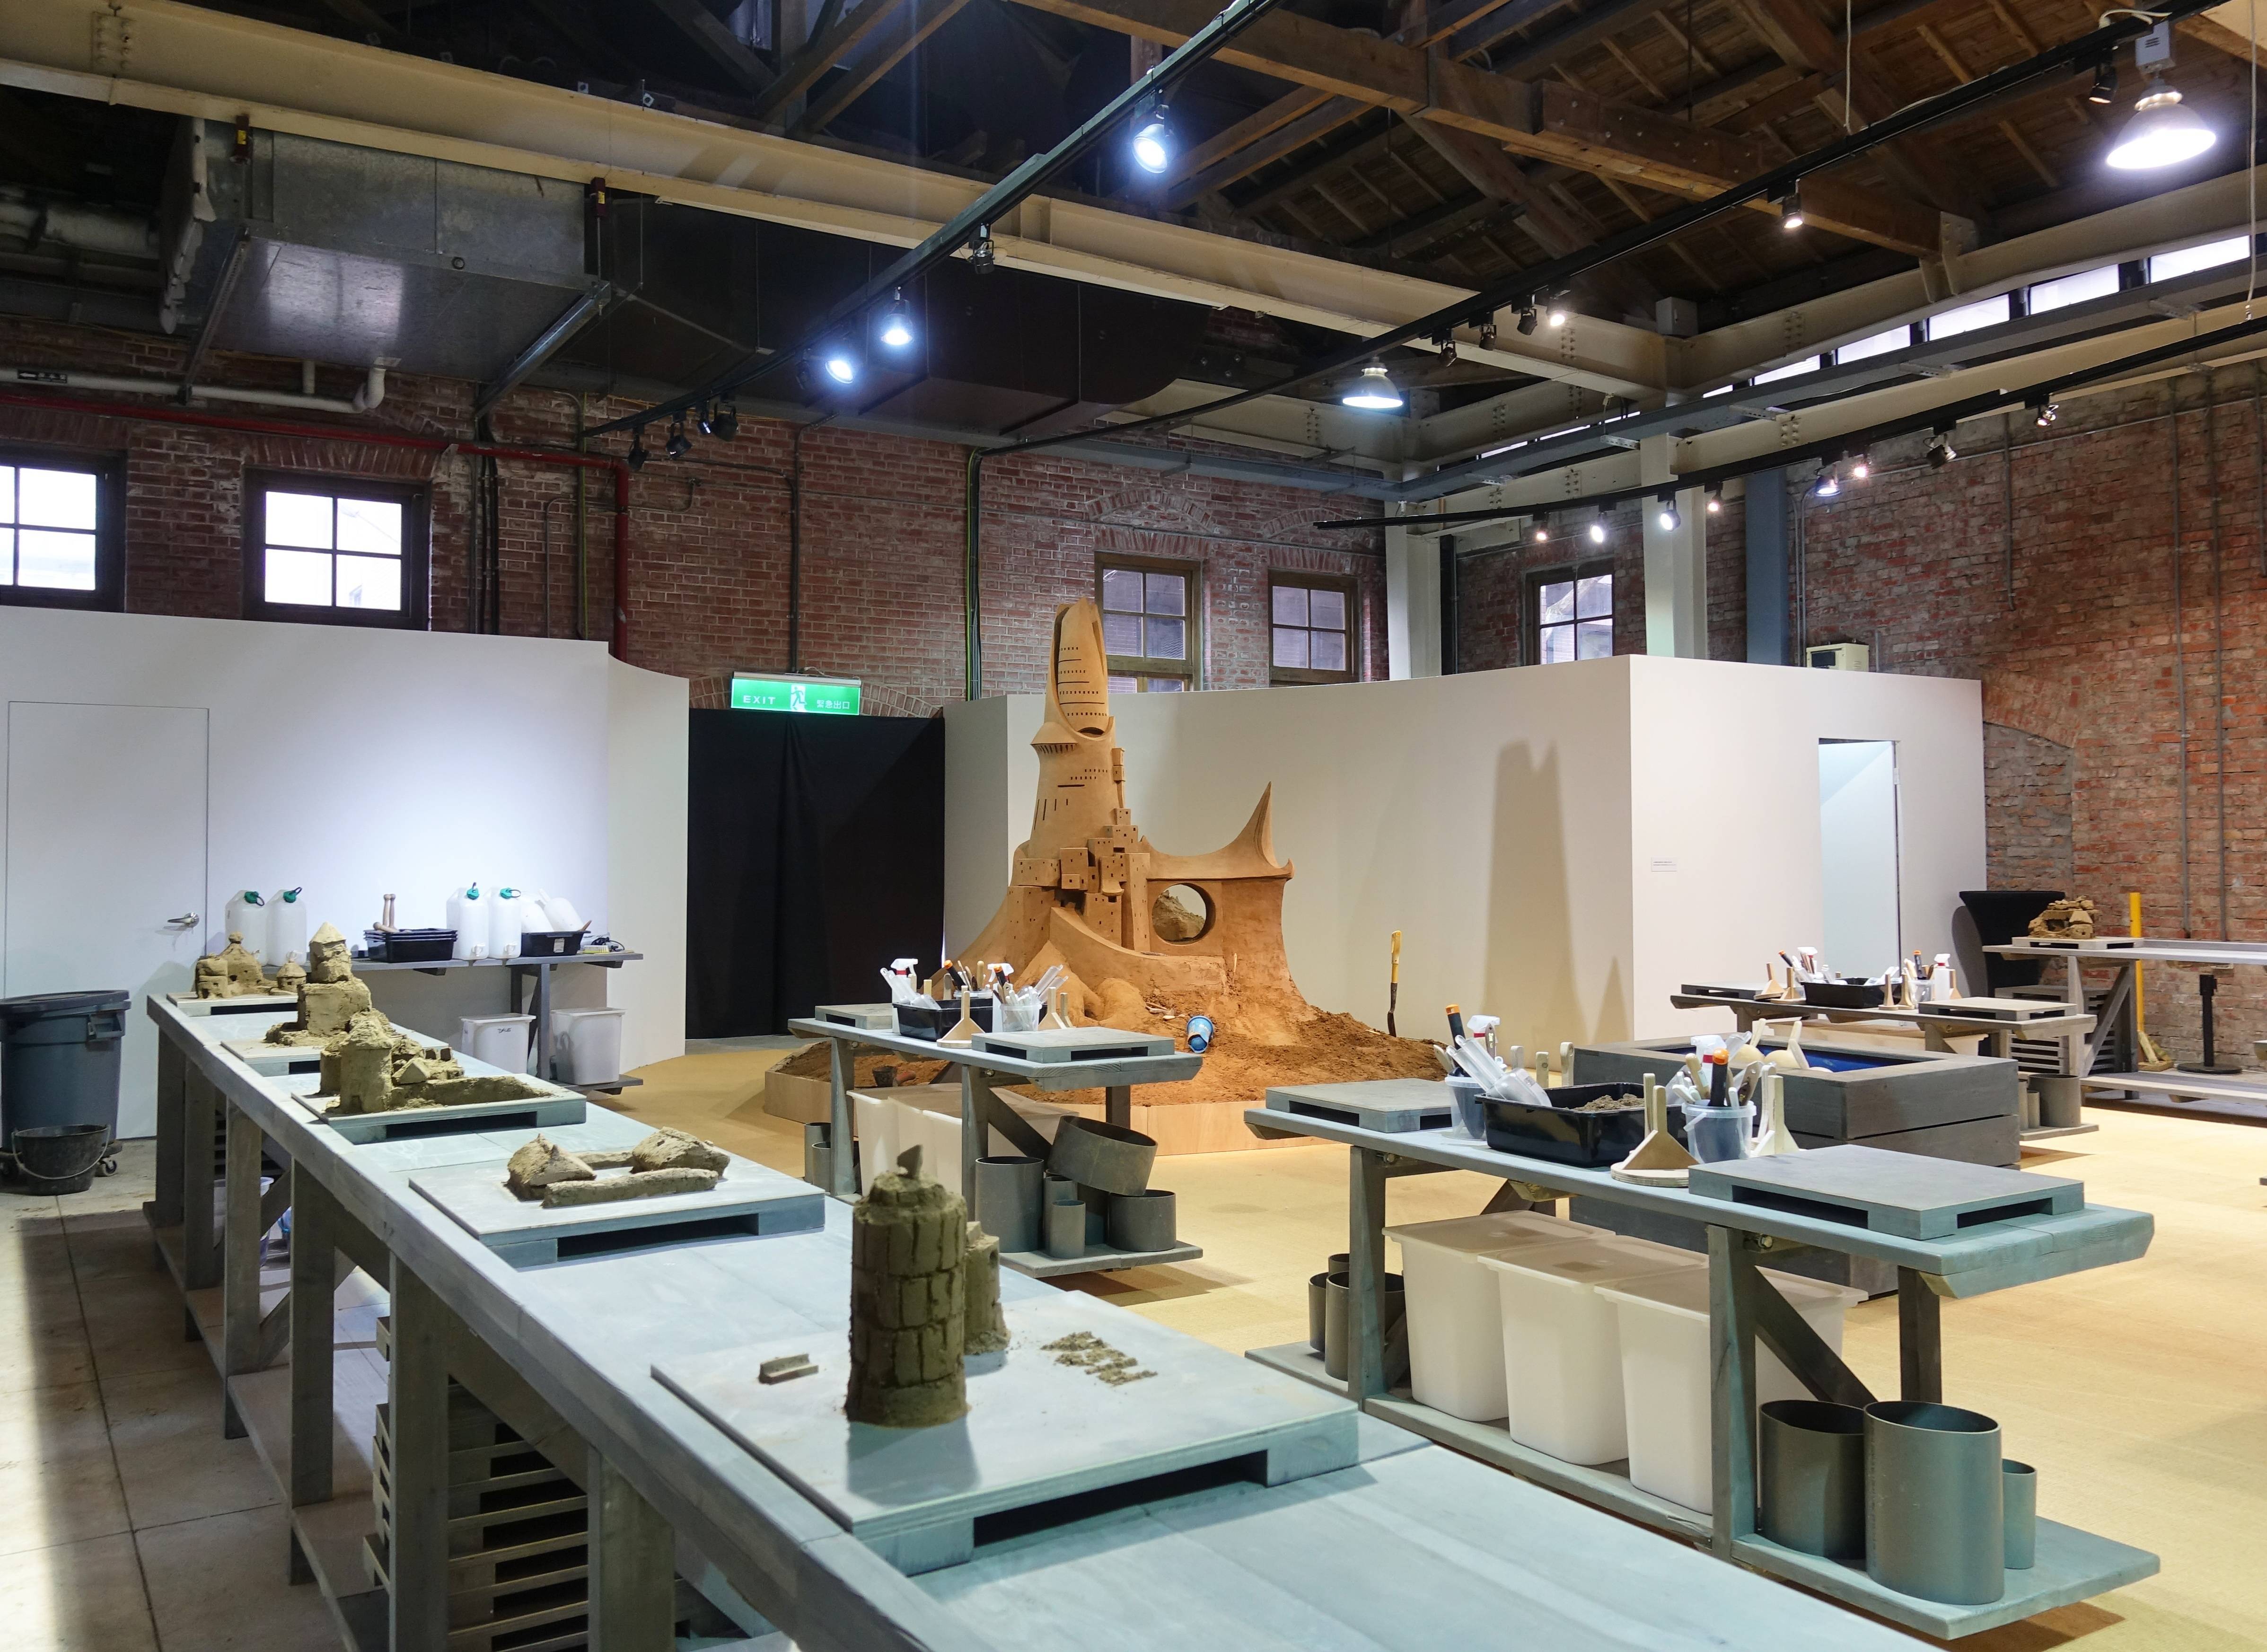 創意沙雕工作坊現場空間一隅。